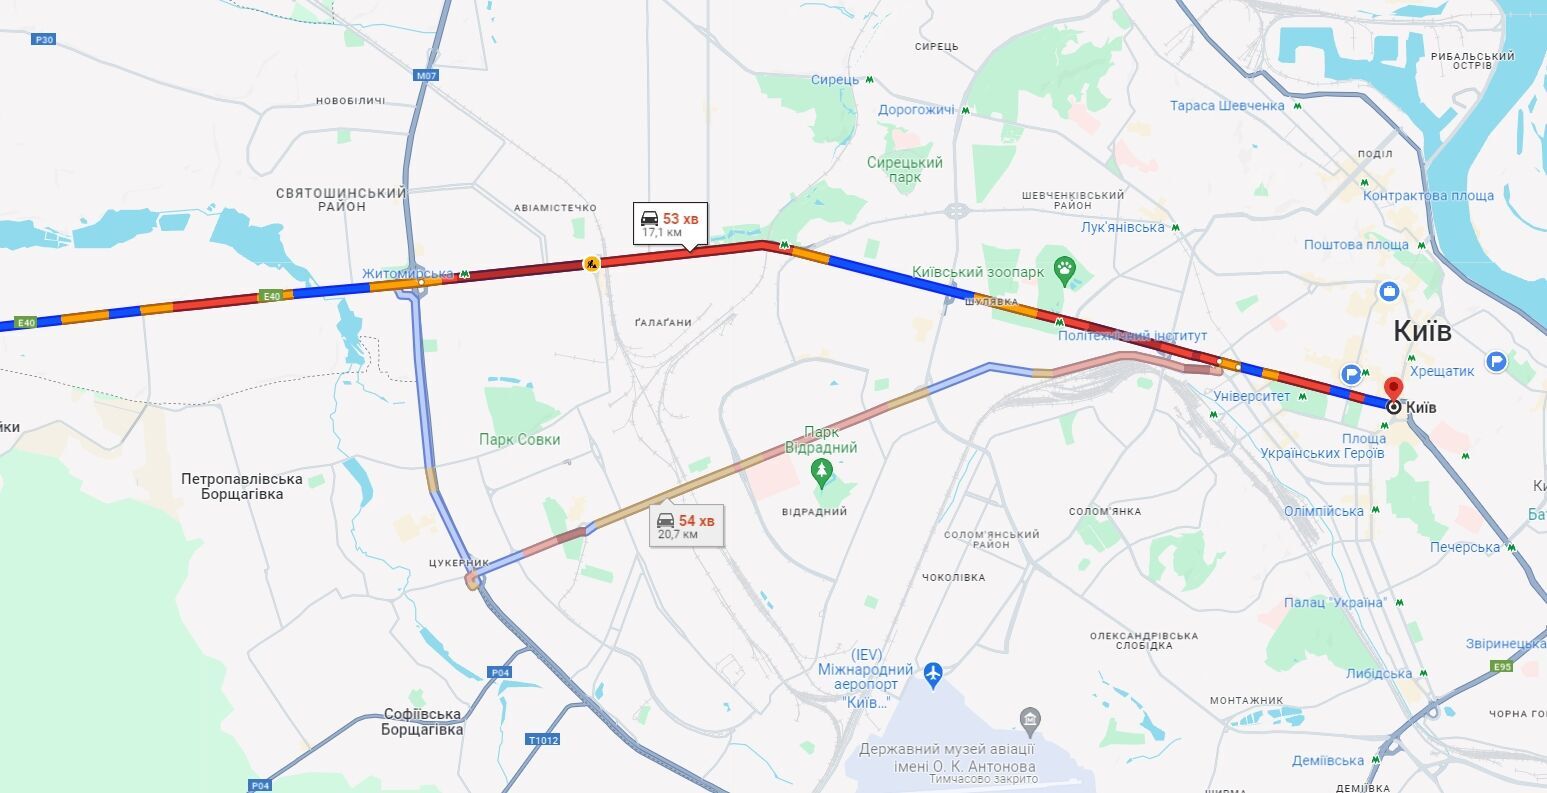 В Киеве утром возникло несколько больших пробок: где тянется движение авто. Карта